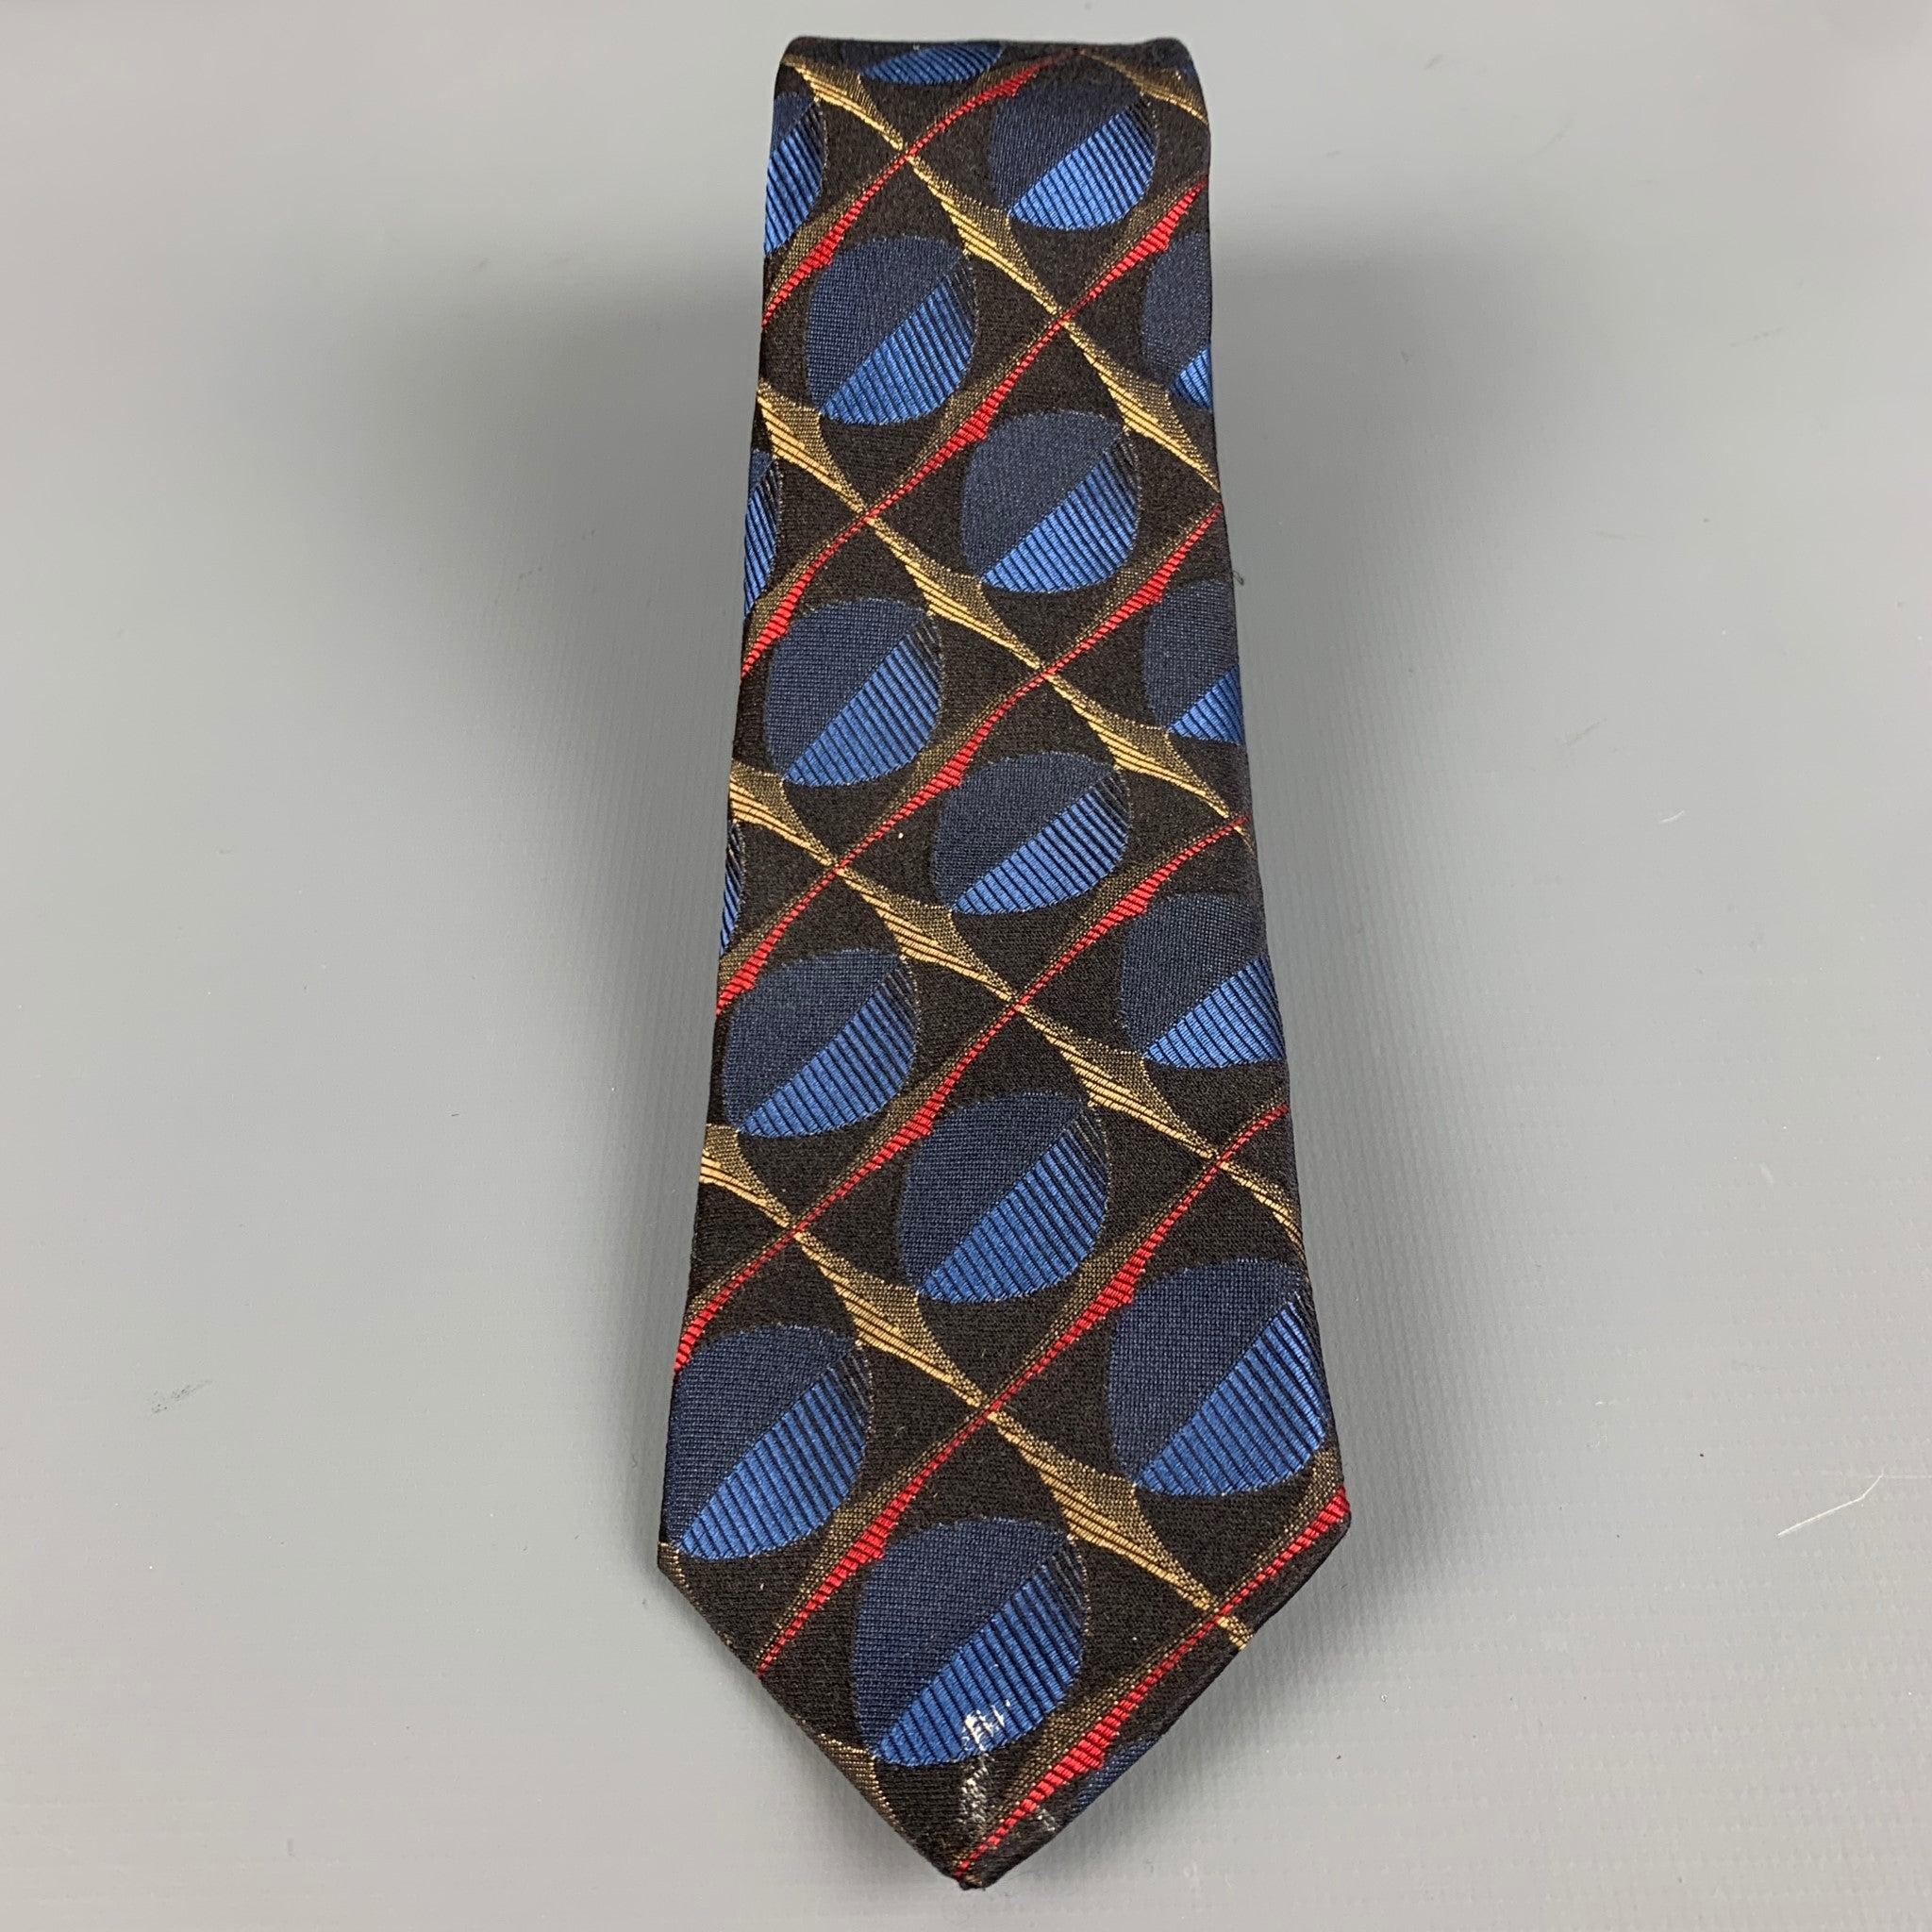 PRADA
Cravate en soie noire à motif jacquard abstrait multicolore et coupe ajustée. Fabriqué en Italie. Bon état d'usage. Signes d'usure modérés, en l'état. 

Mesures : 
  Largeur : 2,5 pouces Longueur : 61 pouces 
  
  
Référence : 127109
Catégorie